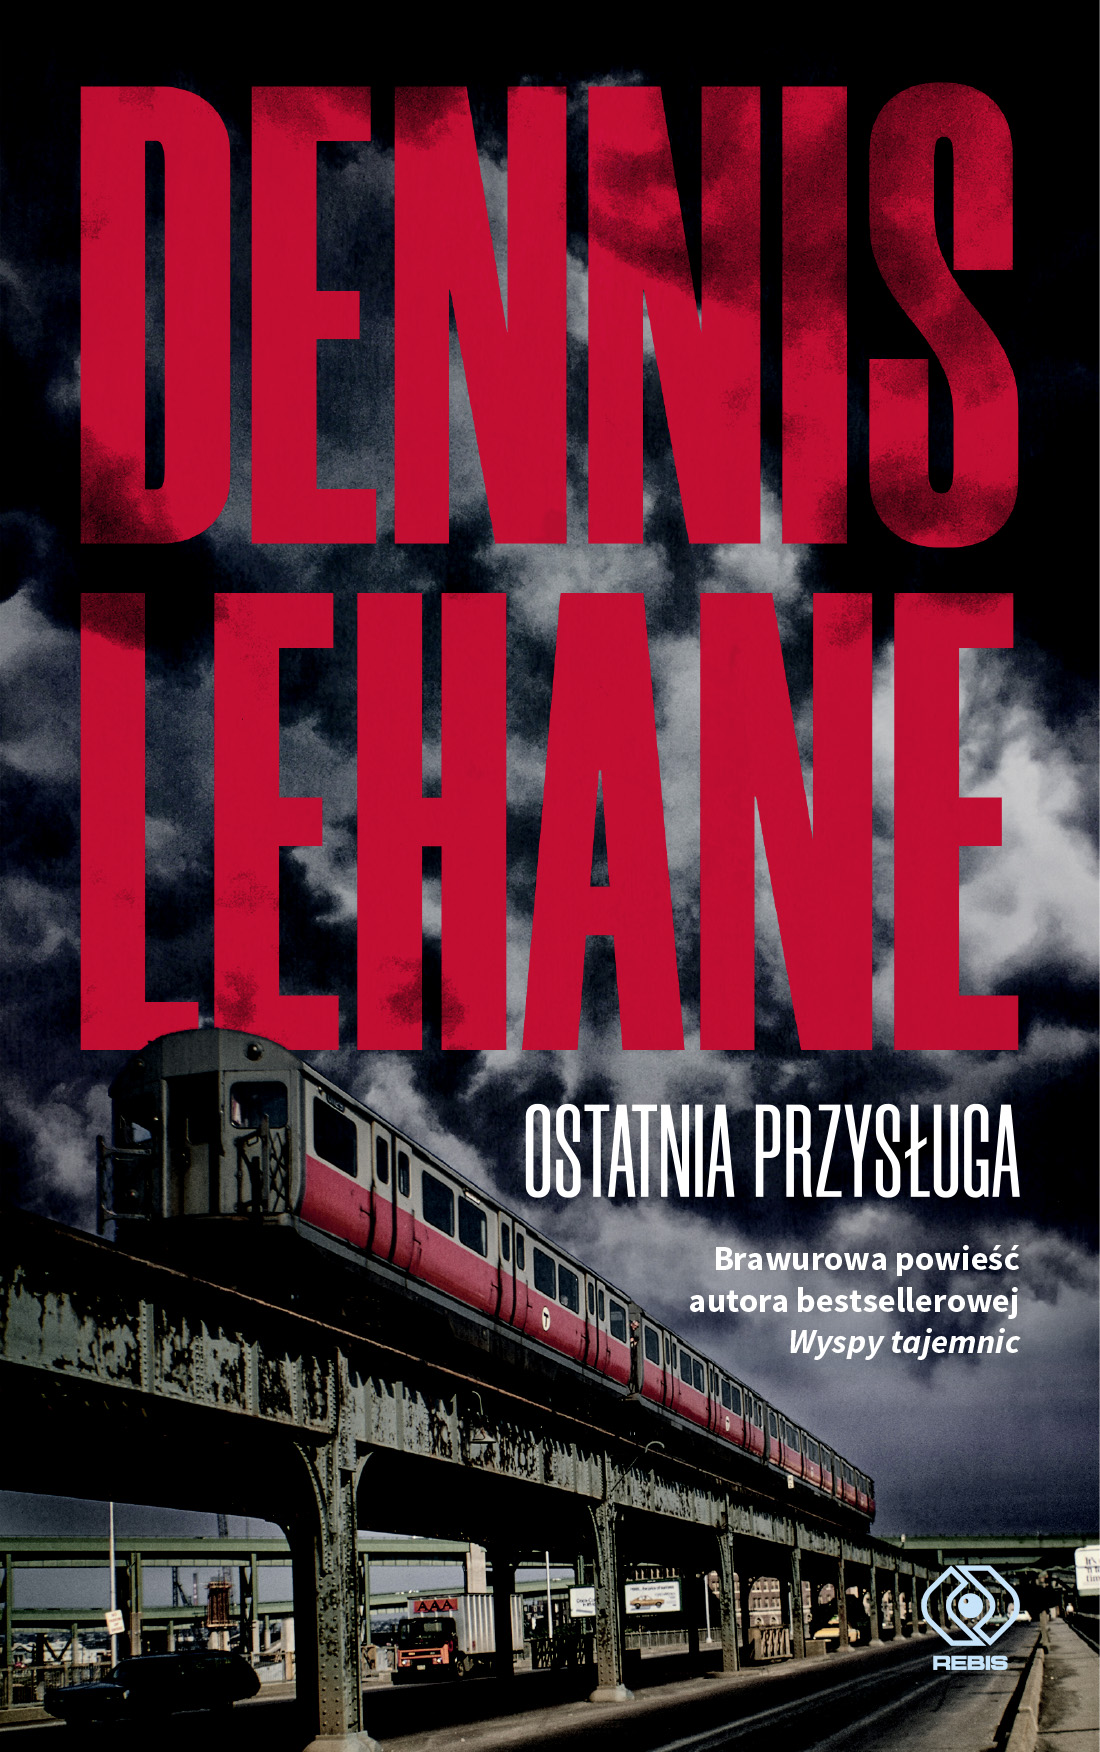 Dennis Lehane, "Ostatnia przysługa" -brawurowa powieść autora bestsellerowej Wyspy tajemnic